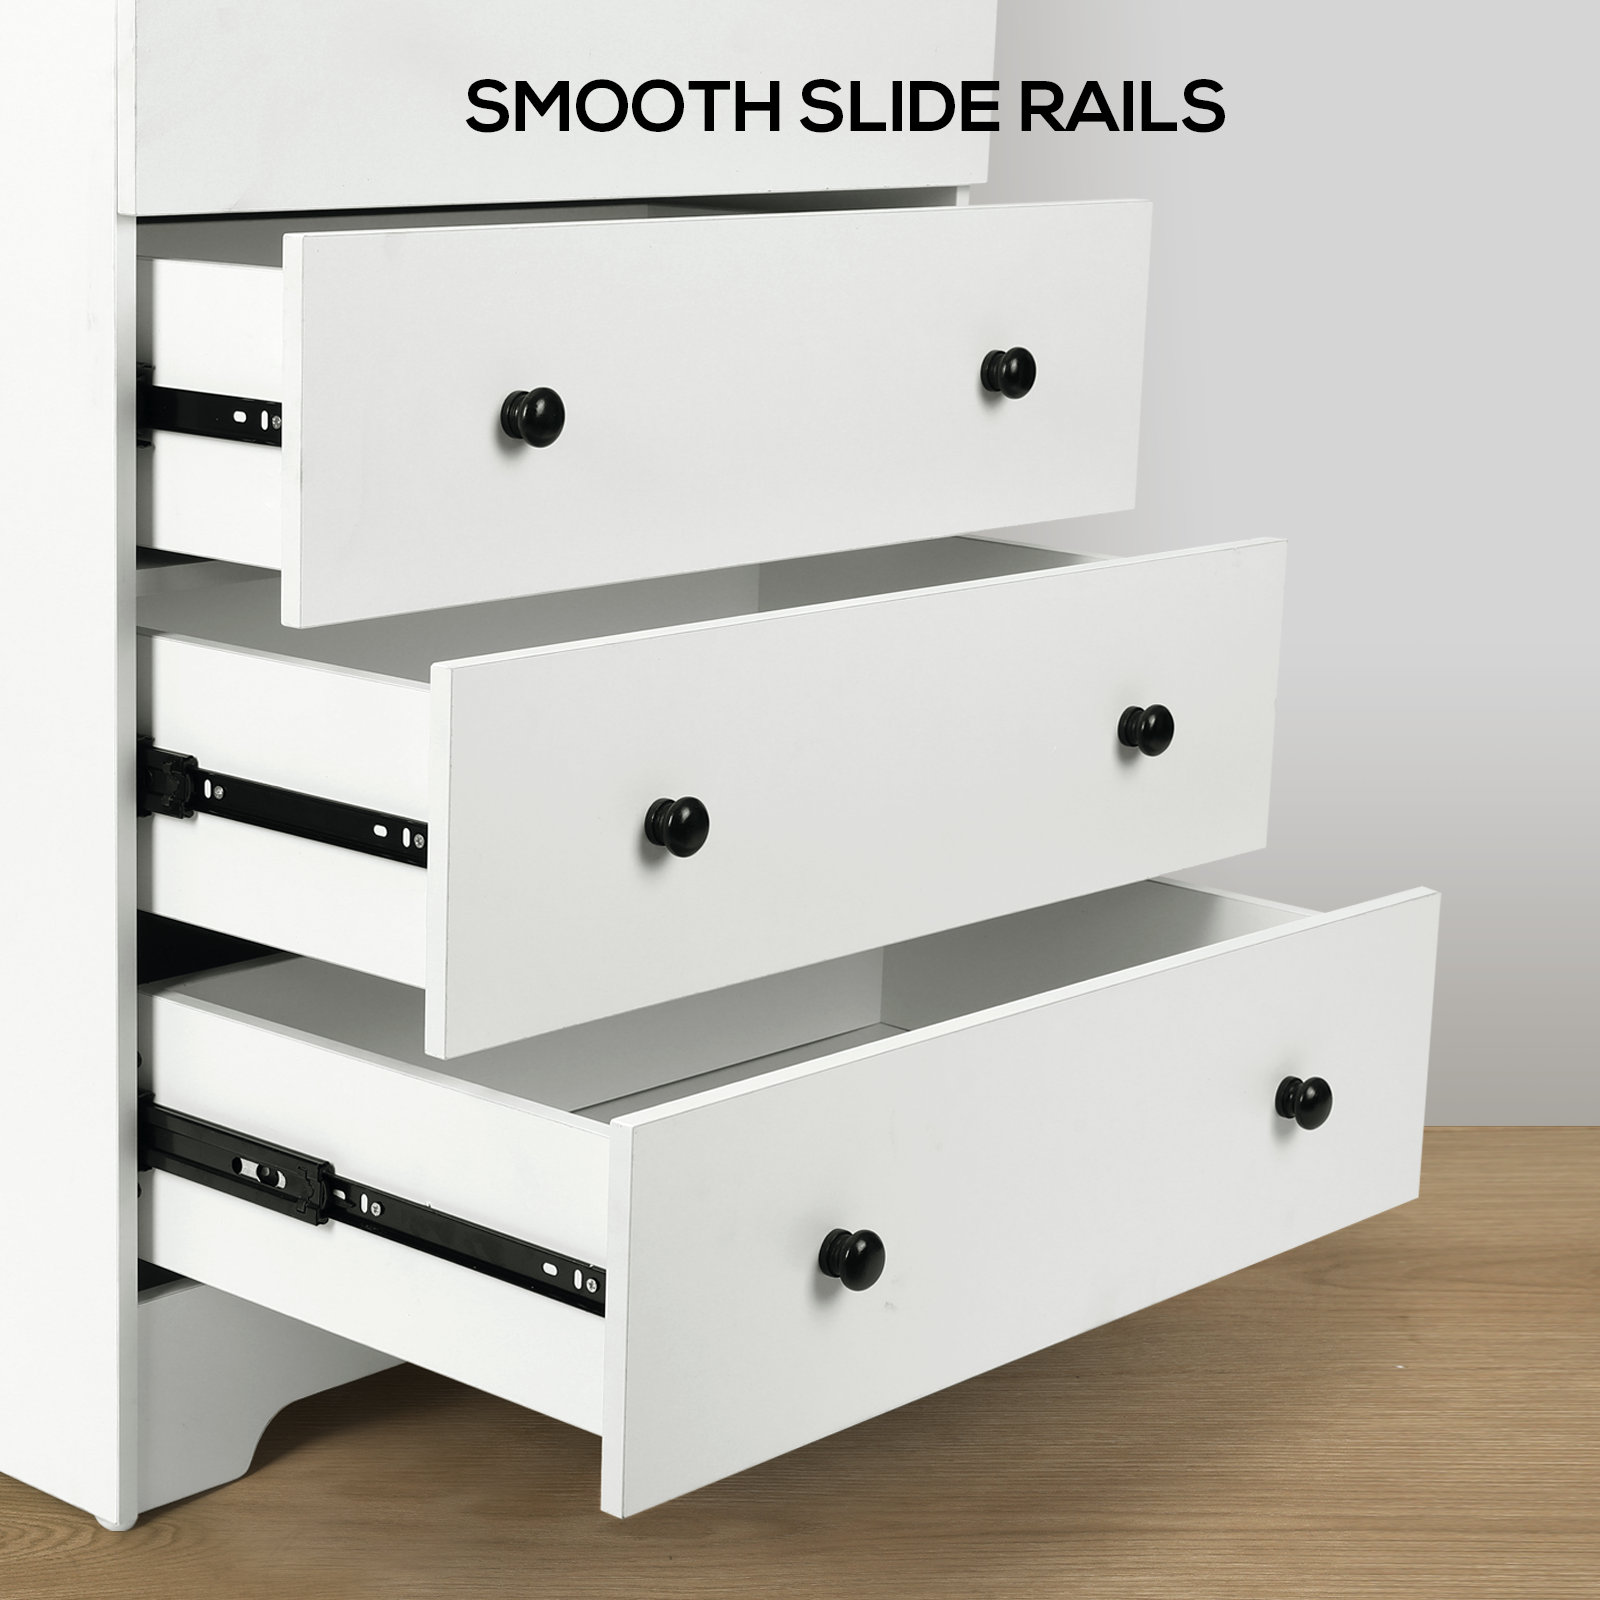 Smooth Slide Rails